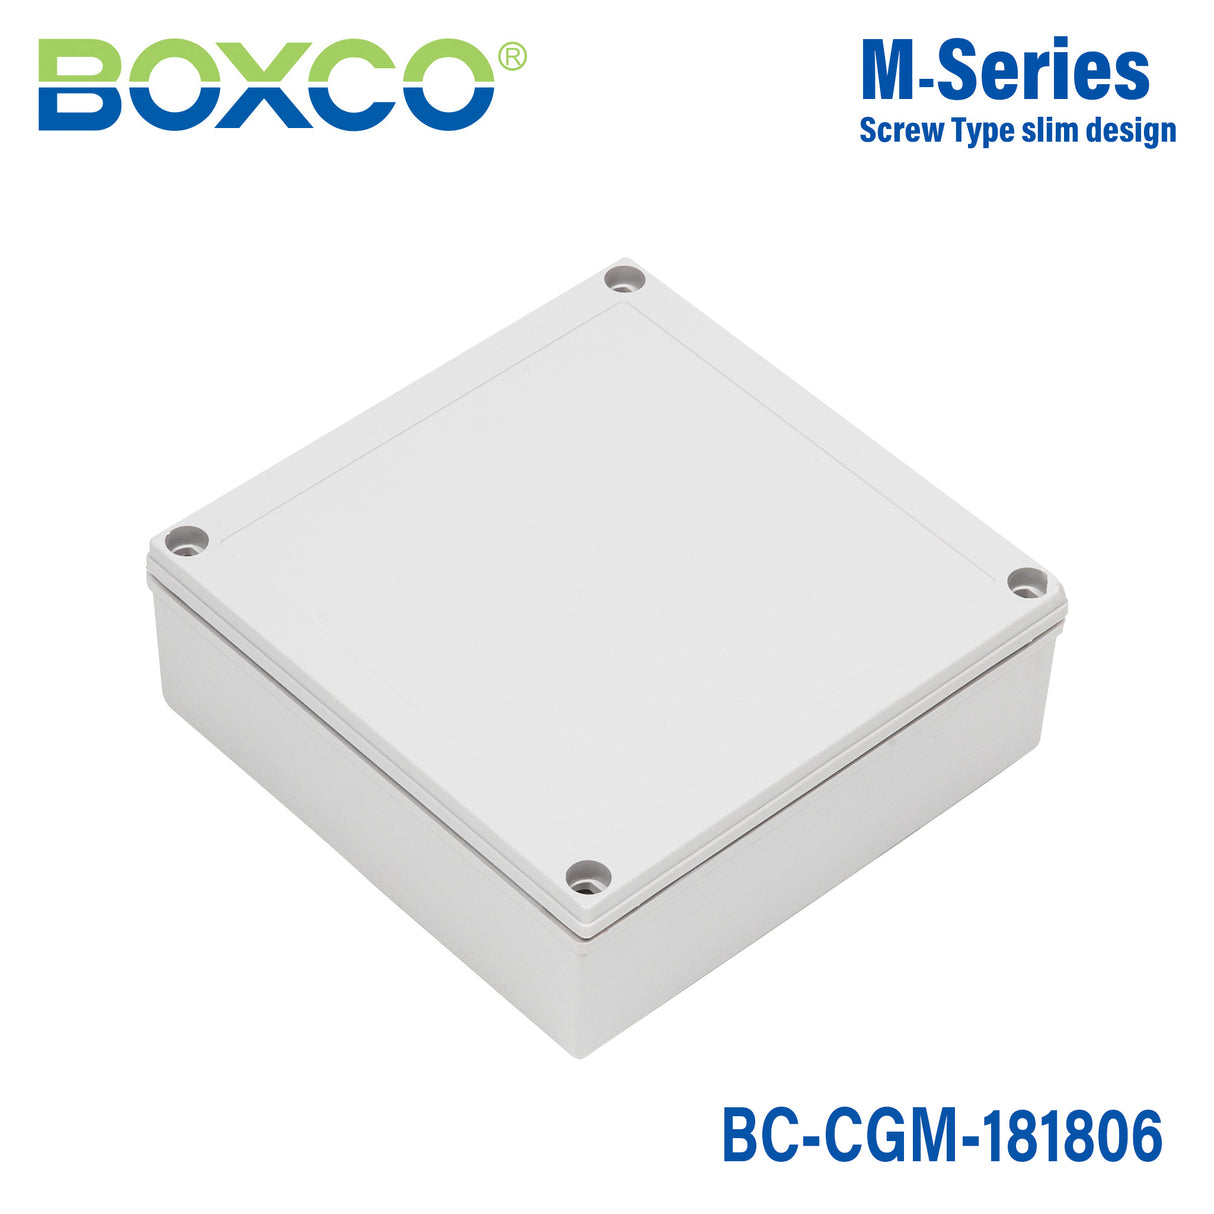 Boxco M-Series 180x180x60mm Plastic Enclosure, IP67, IK08, PC, Grey Cover, Screw Type